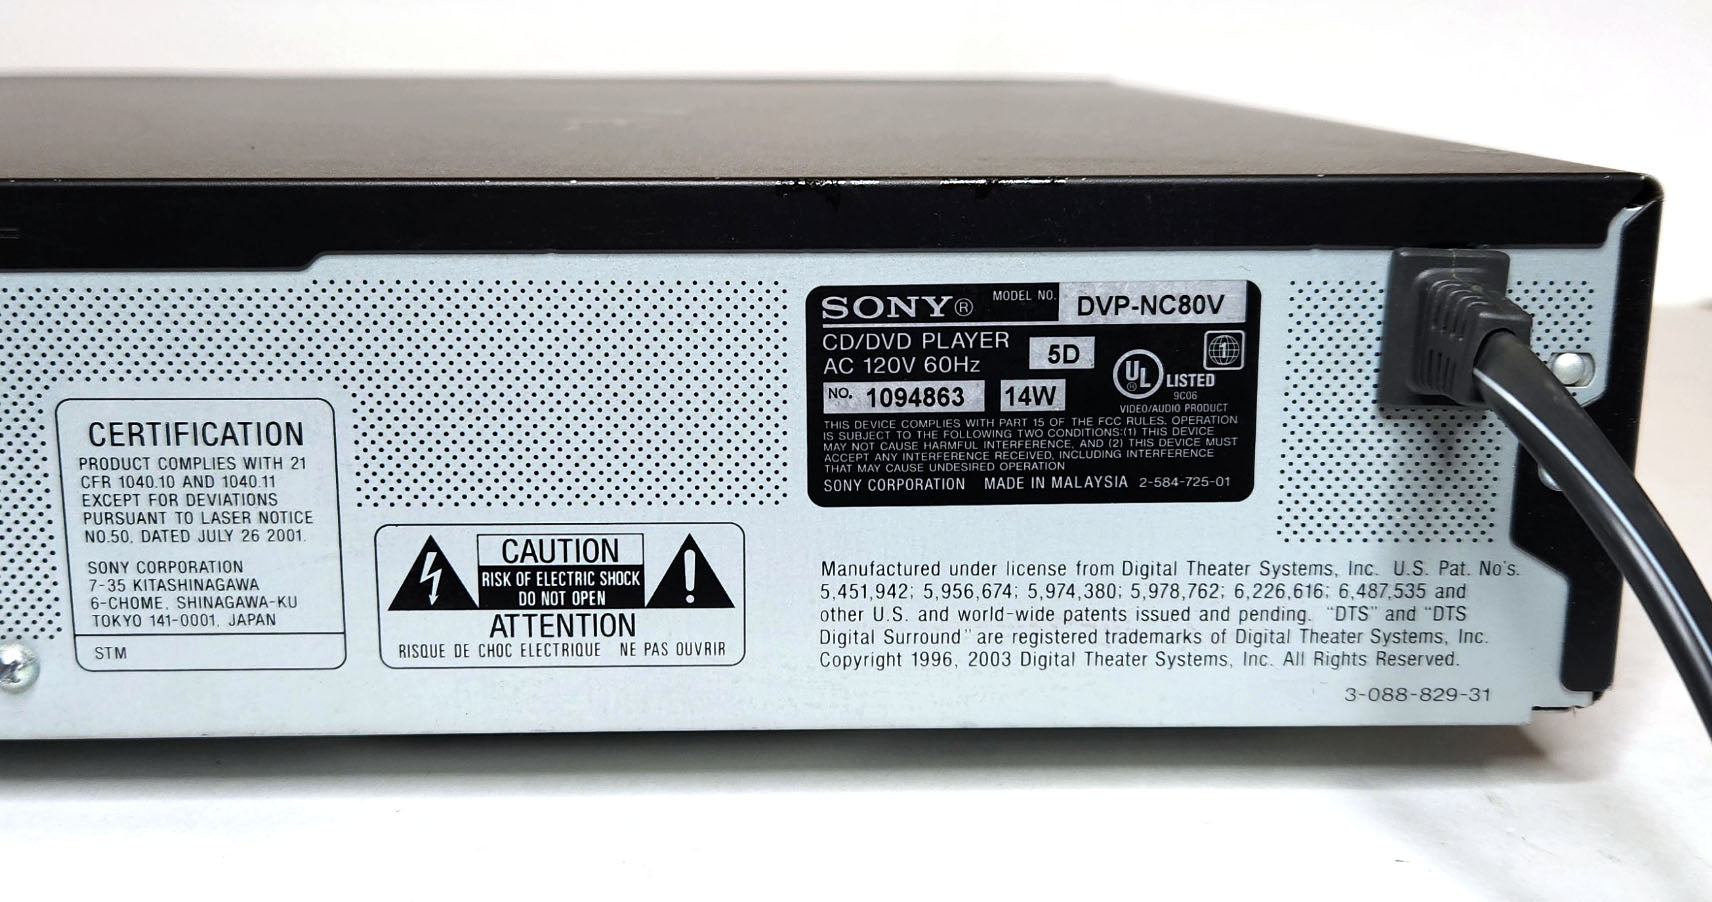 Sony DVP-NC80V DVD/CD Player, 5 Disc Carousel Changer - Label